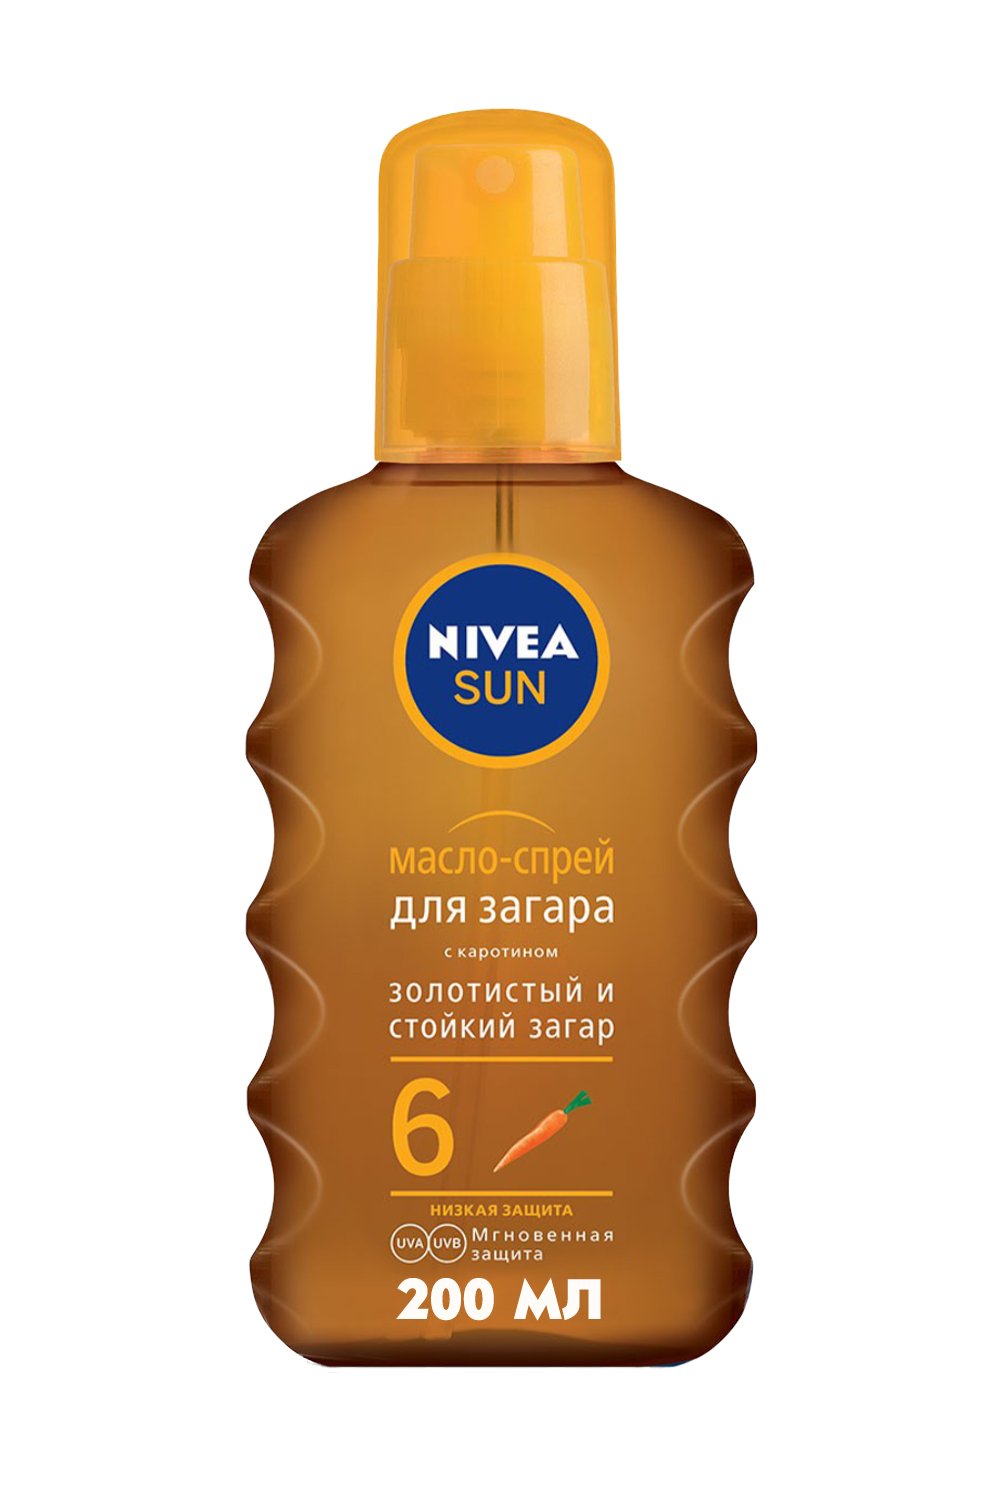 Масло-спрей для загара Nivea Sun с каротином, SPF 6, 200 мл - фото 1